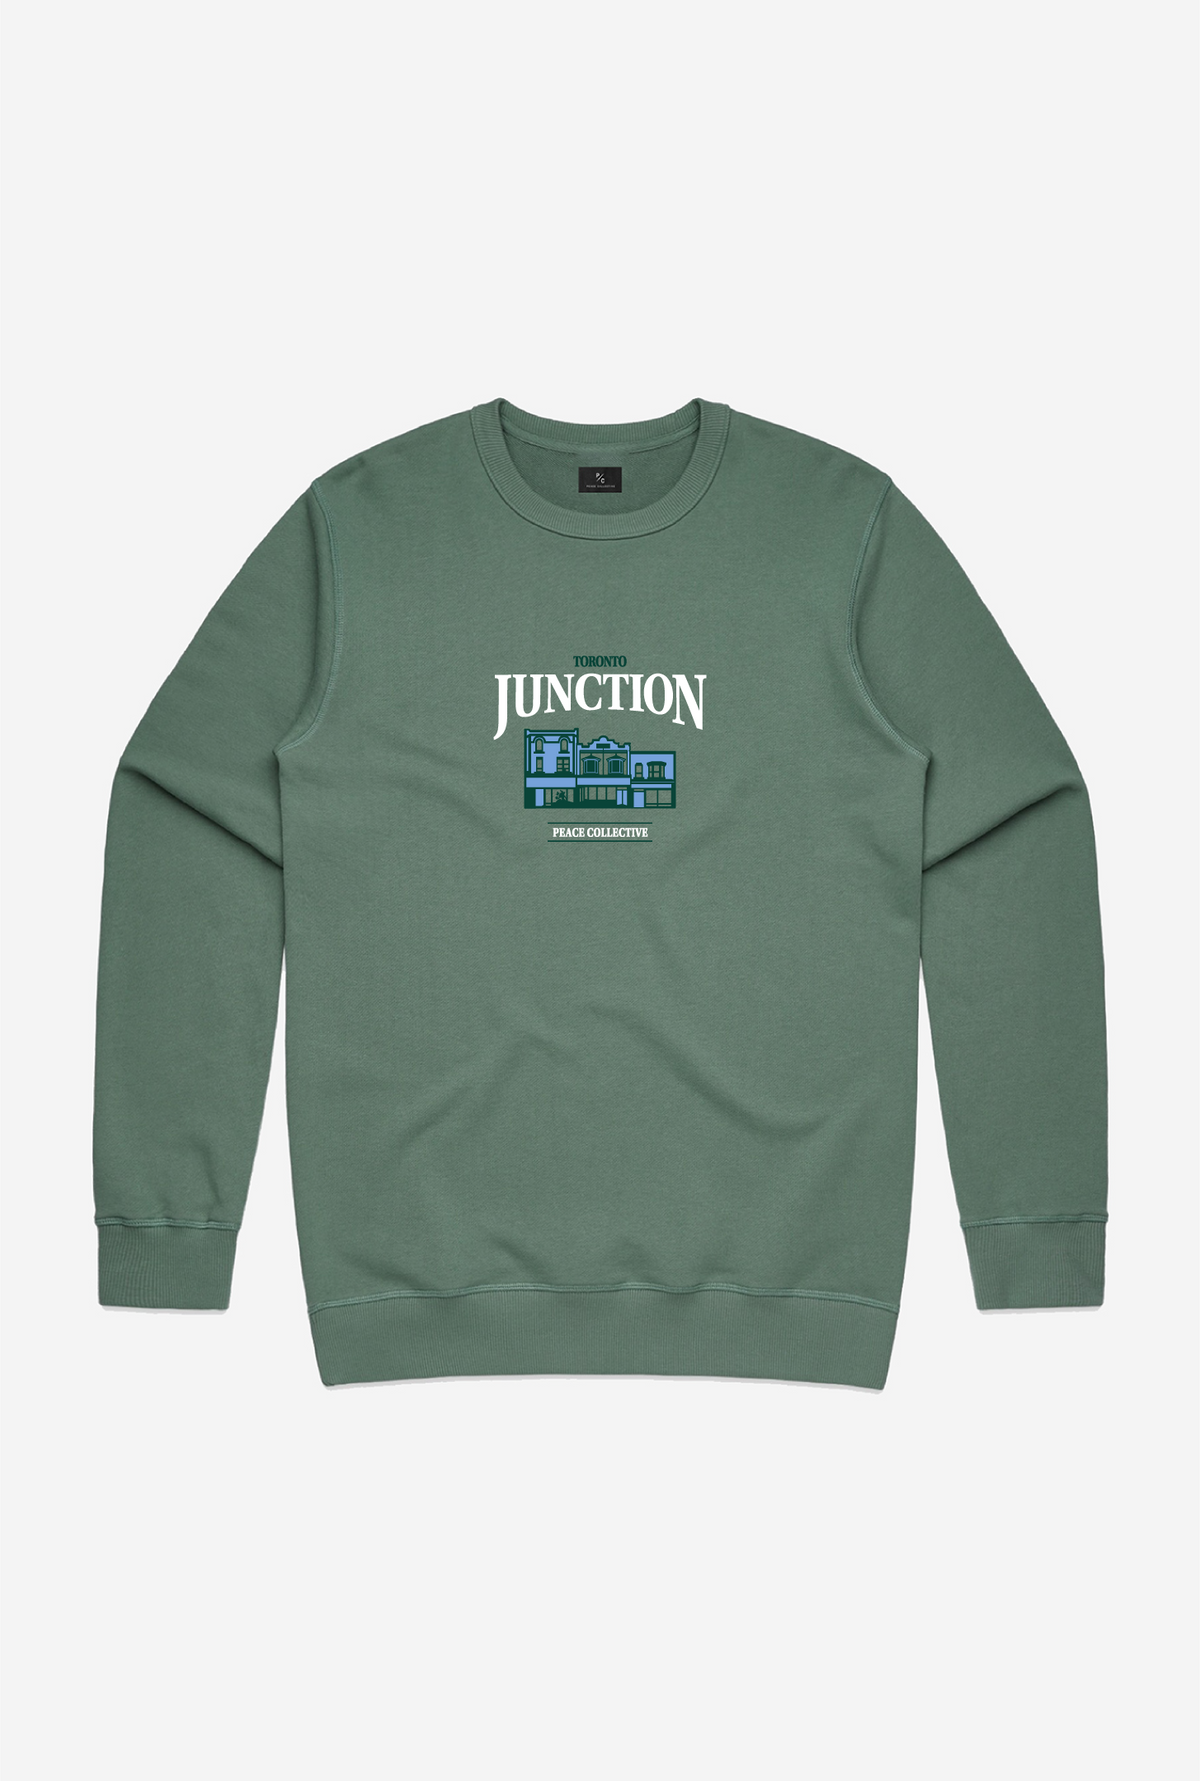 Junction Vintage Crewneck - Sage